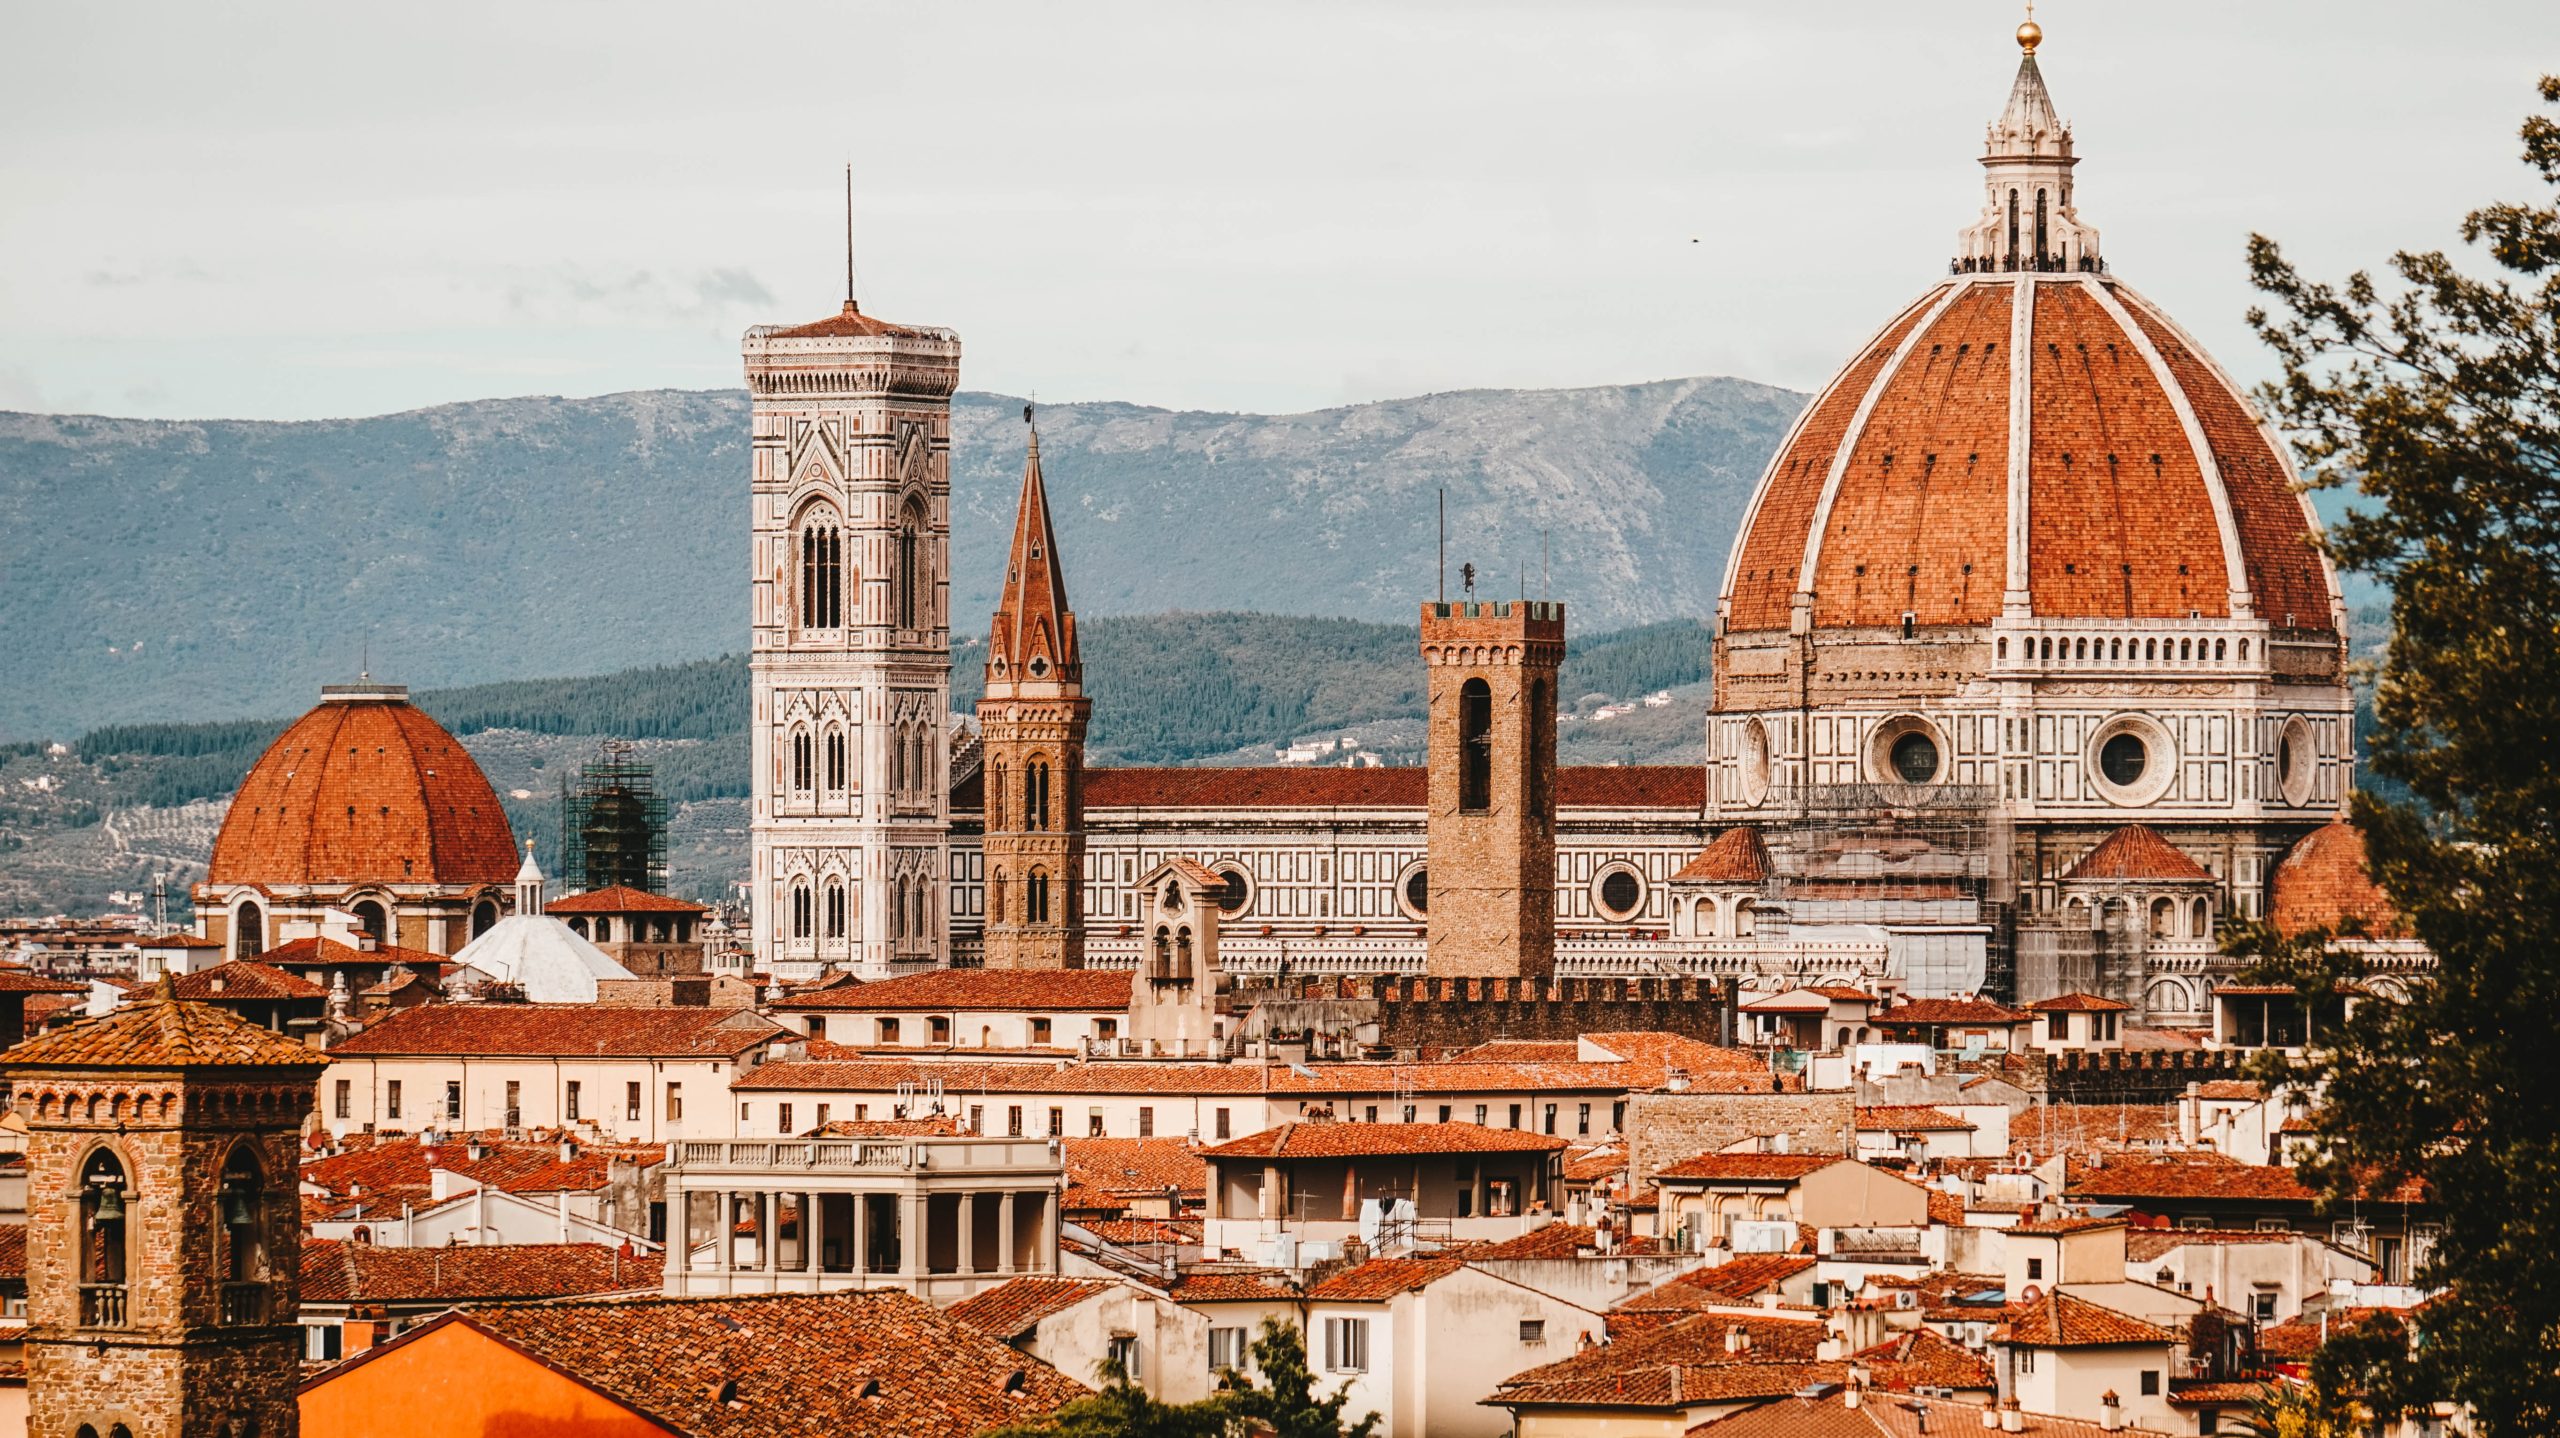 Magnifica Firenze, classica e insolita